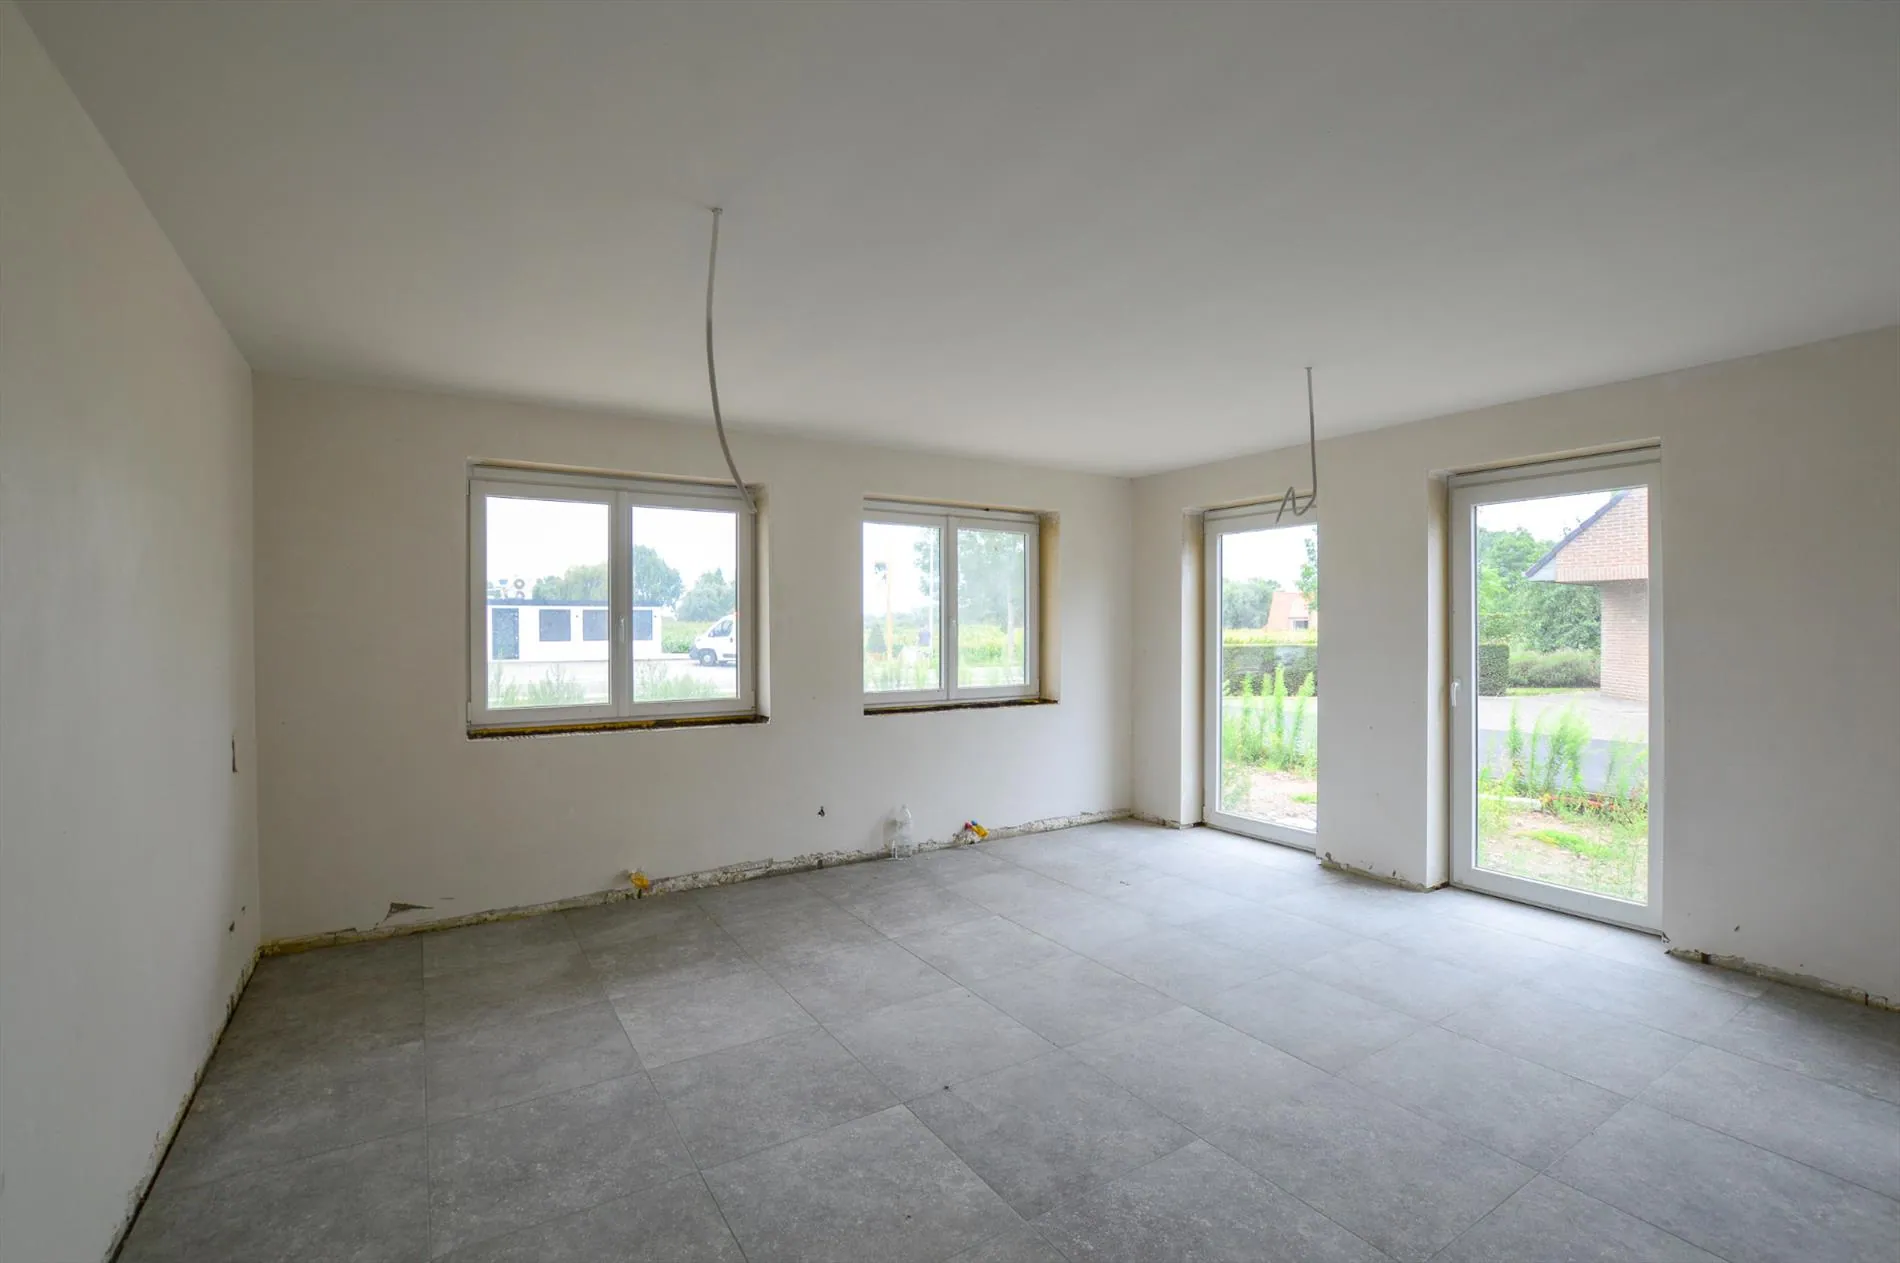 Nieuwbouwappartement op gelijkvloers in Oudenburg (Roksem)